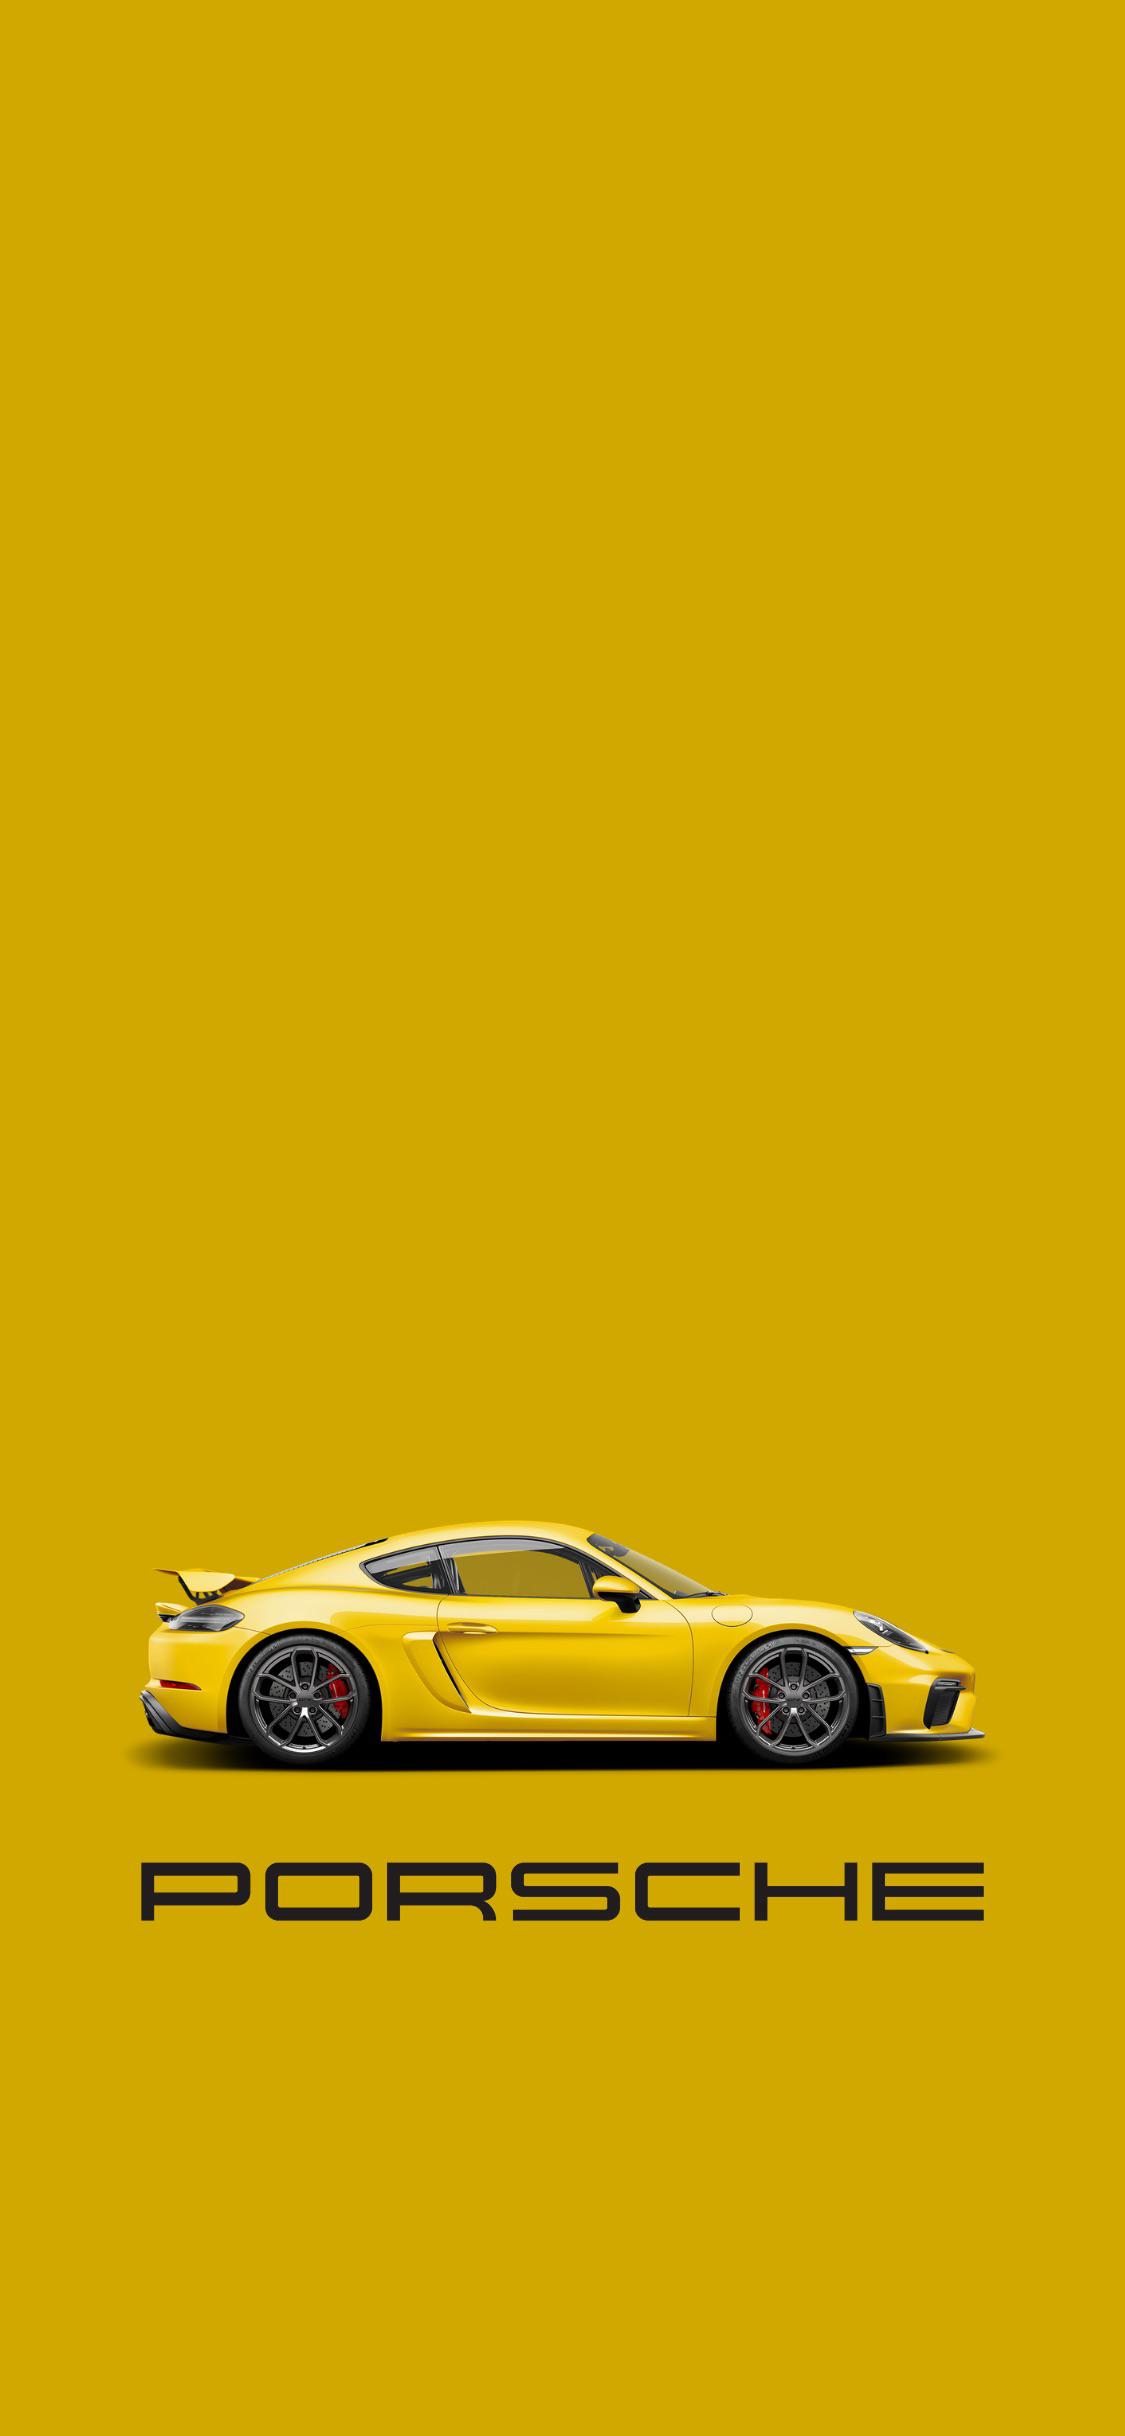 Porsche Cayman Gt4 Wallpapers